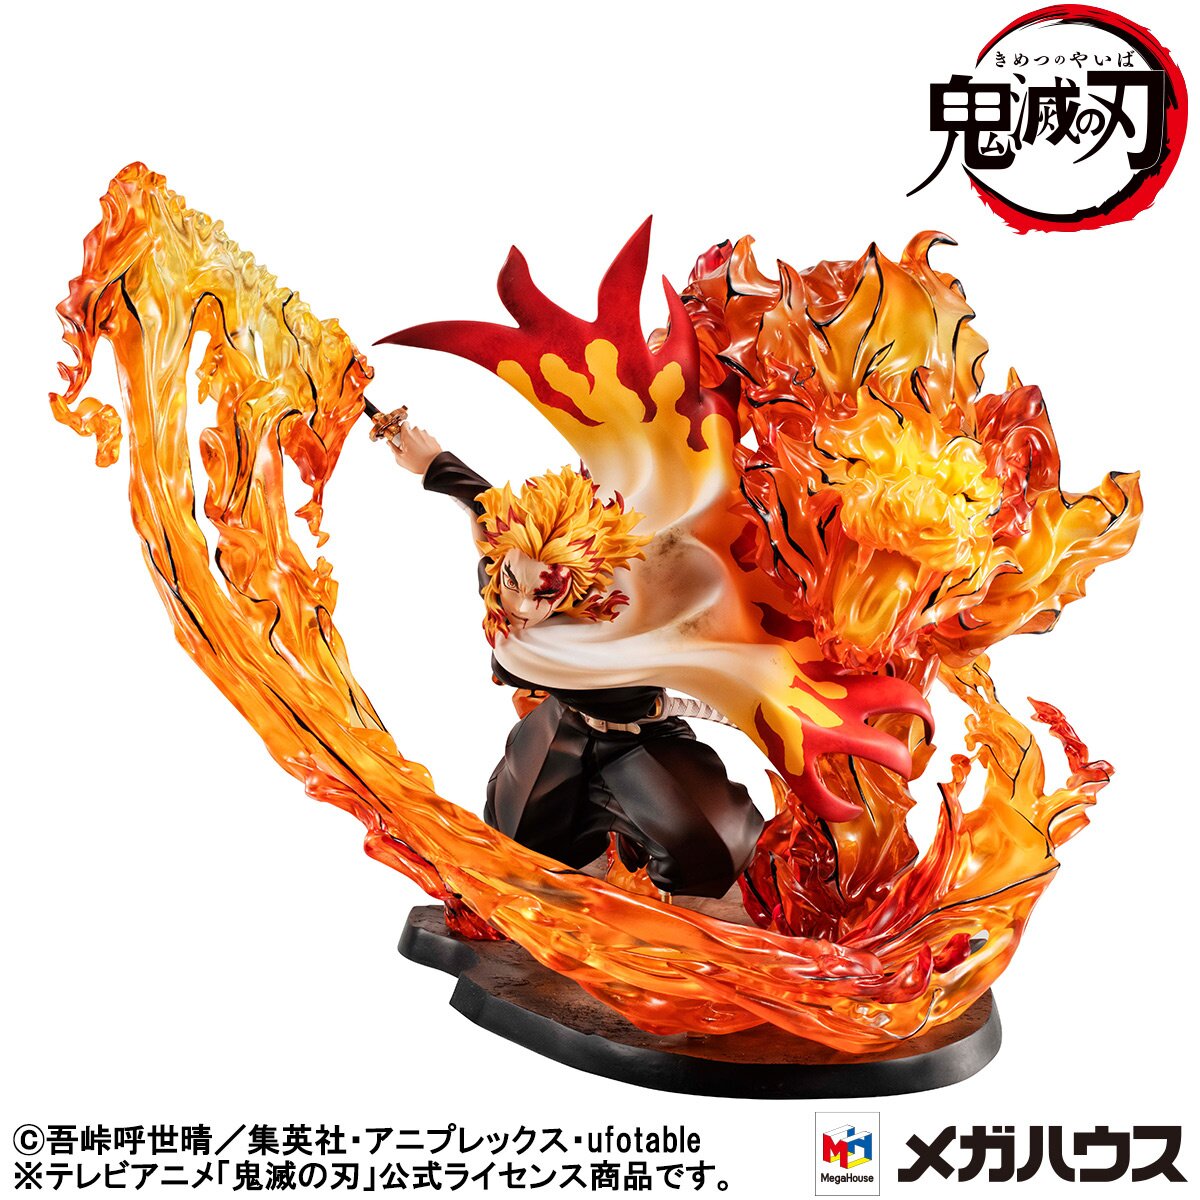 Kyojuro Rengoku, The Flame Hashira